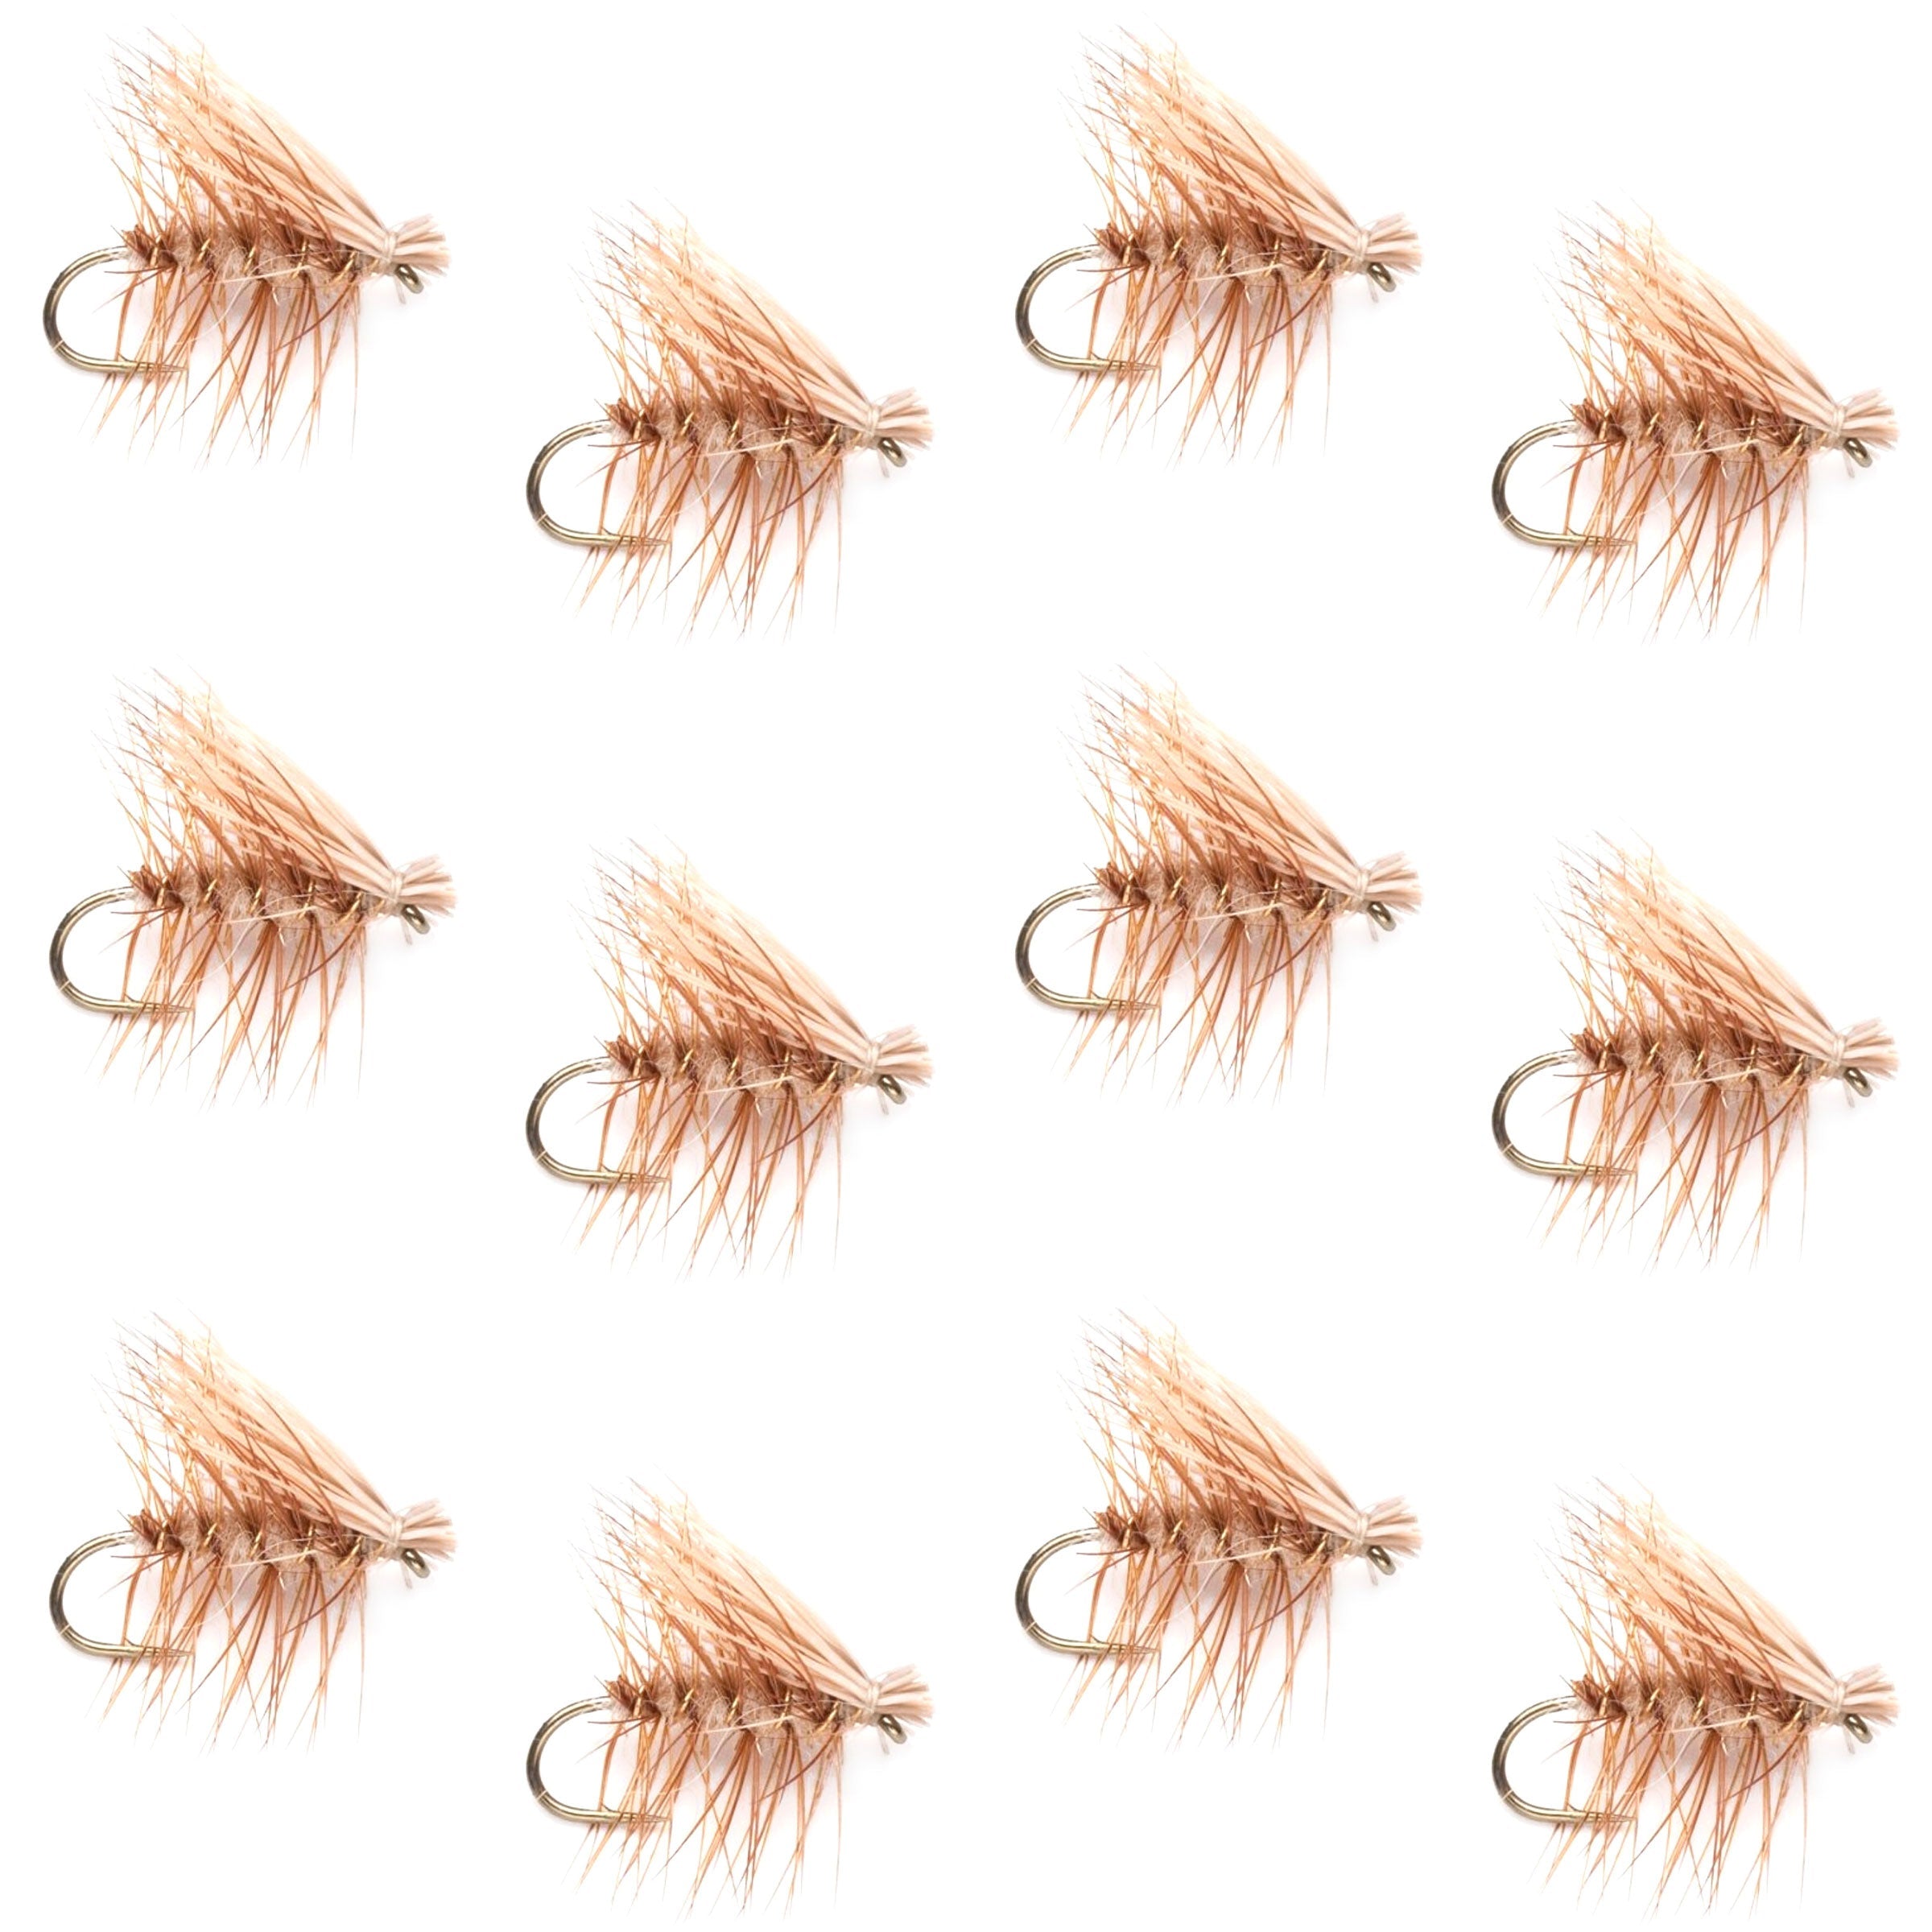 Barbless Tan Elk Hair Caddis Classic Trout Dry Flies 1 Dozen Flies Size 18